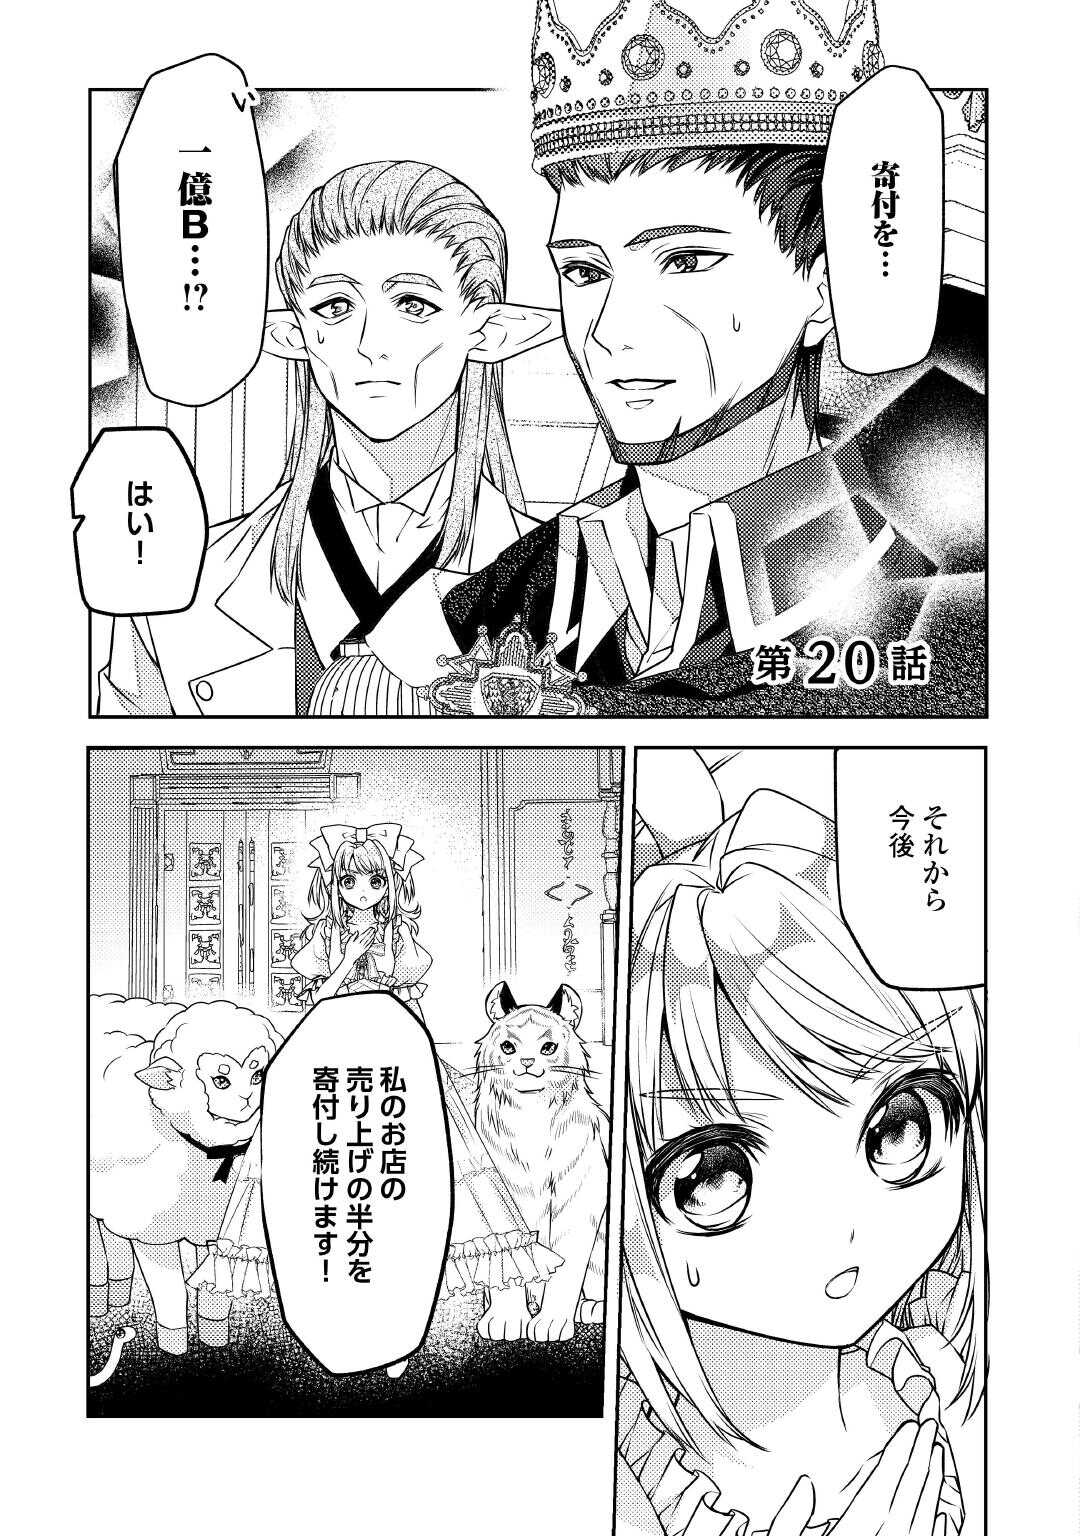 Toaru Chisana Mura No Chi Tona Tanya Ya San - Chapter 20 - Page 1